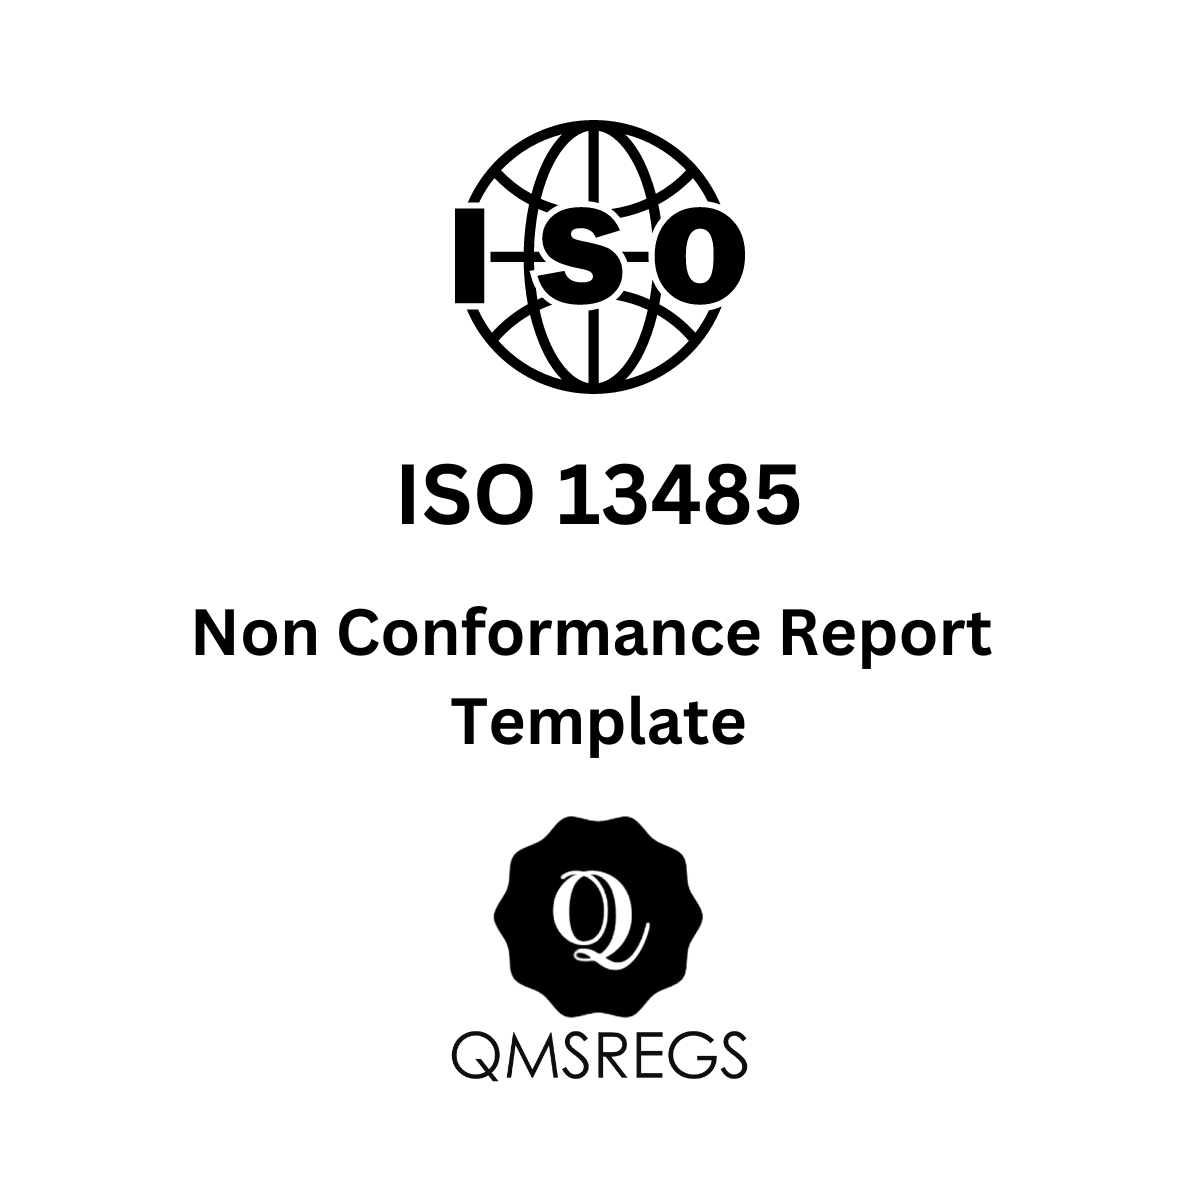 ISO 13485 Non Conformance Report template